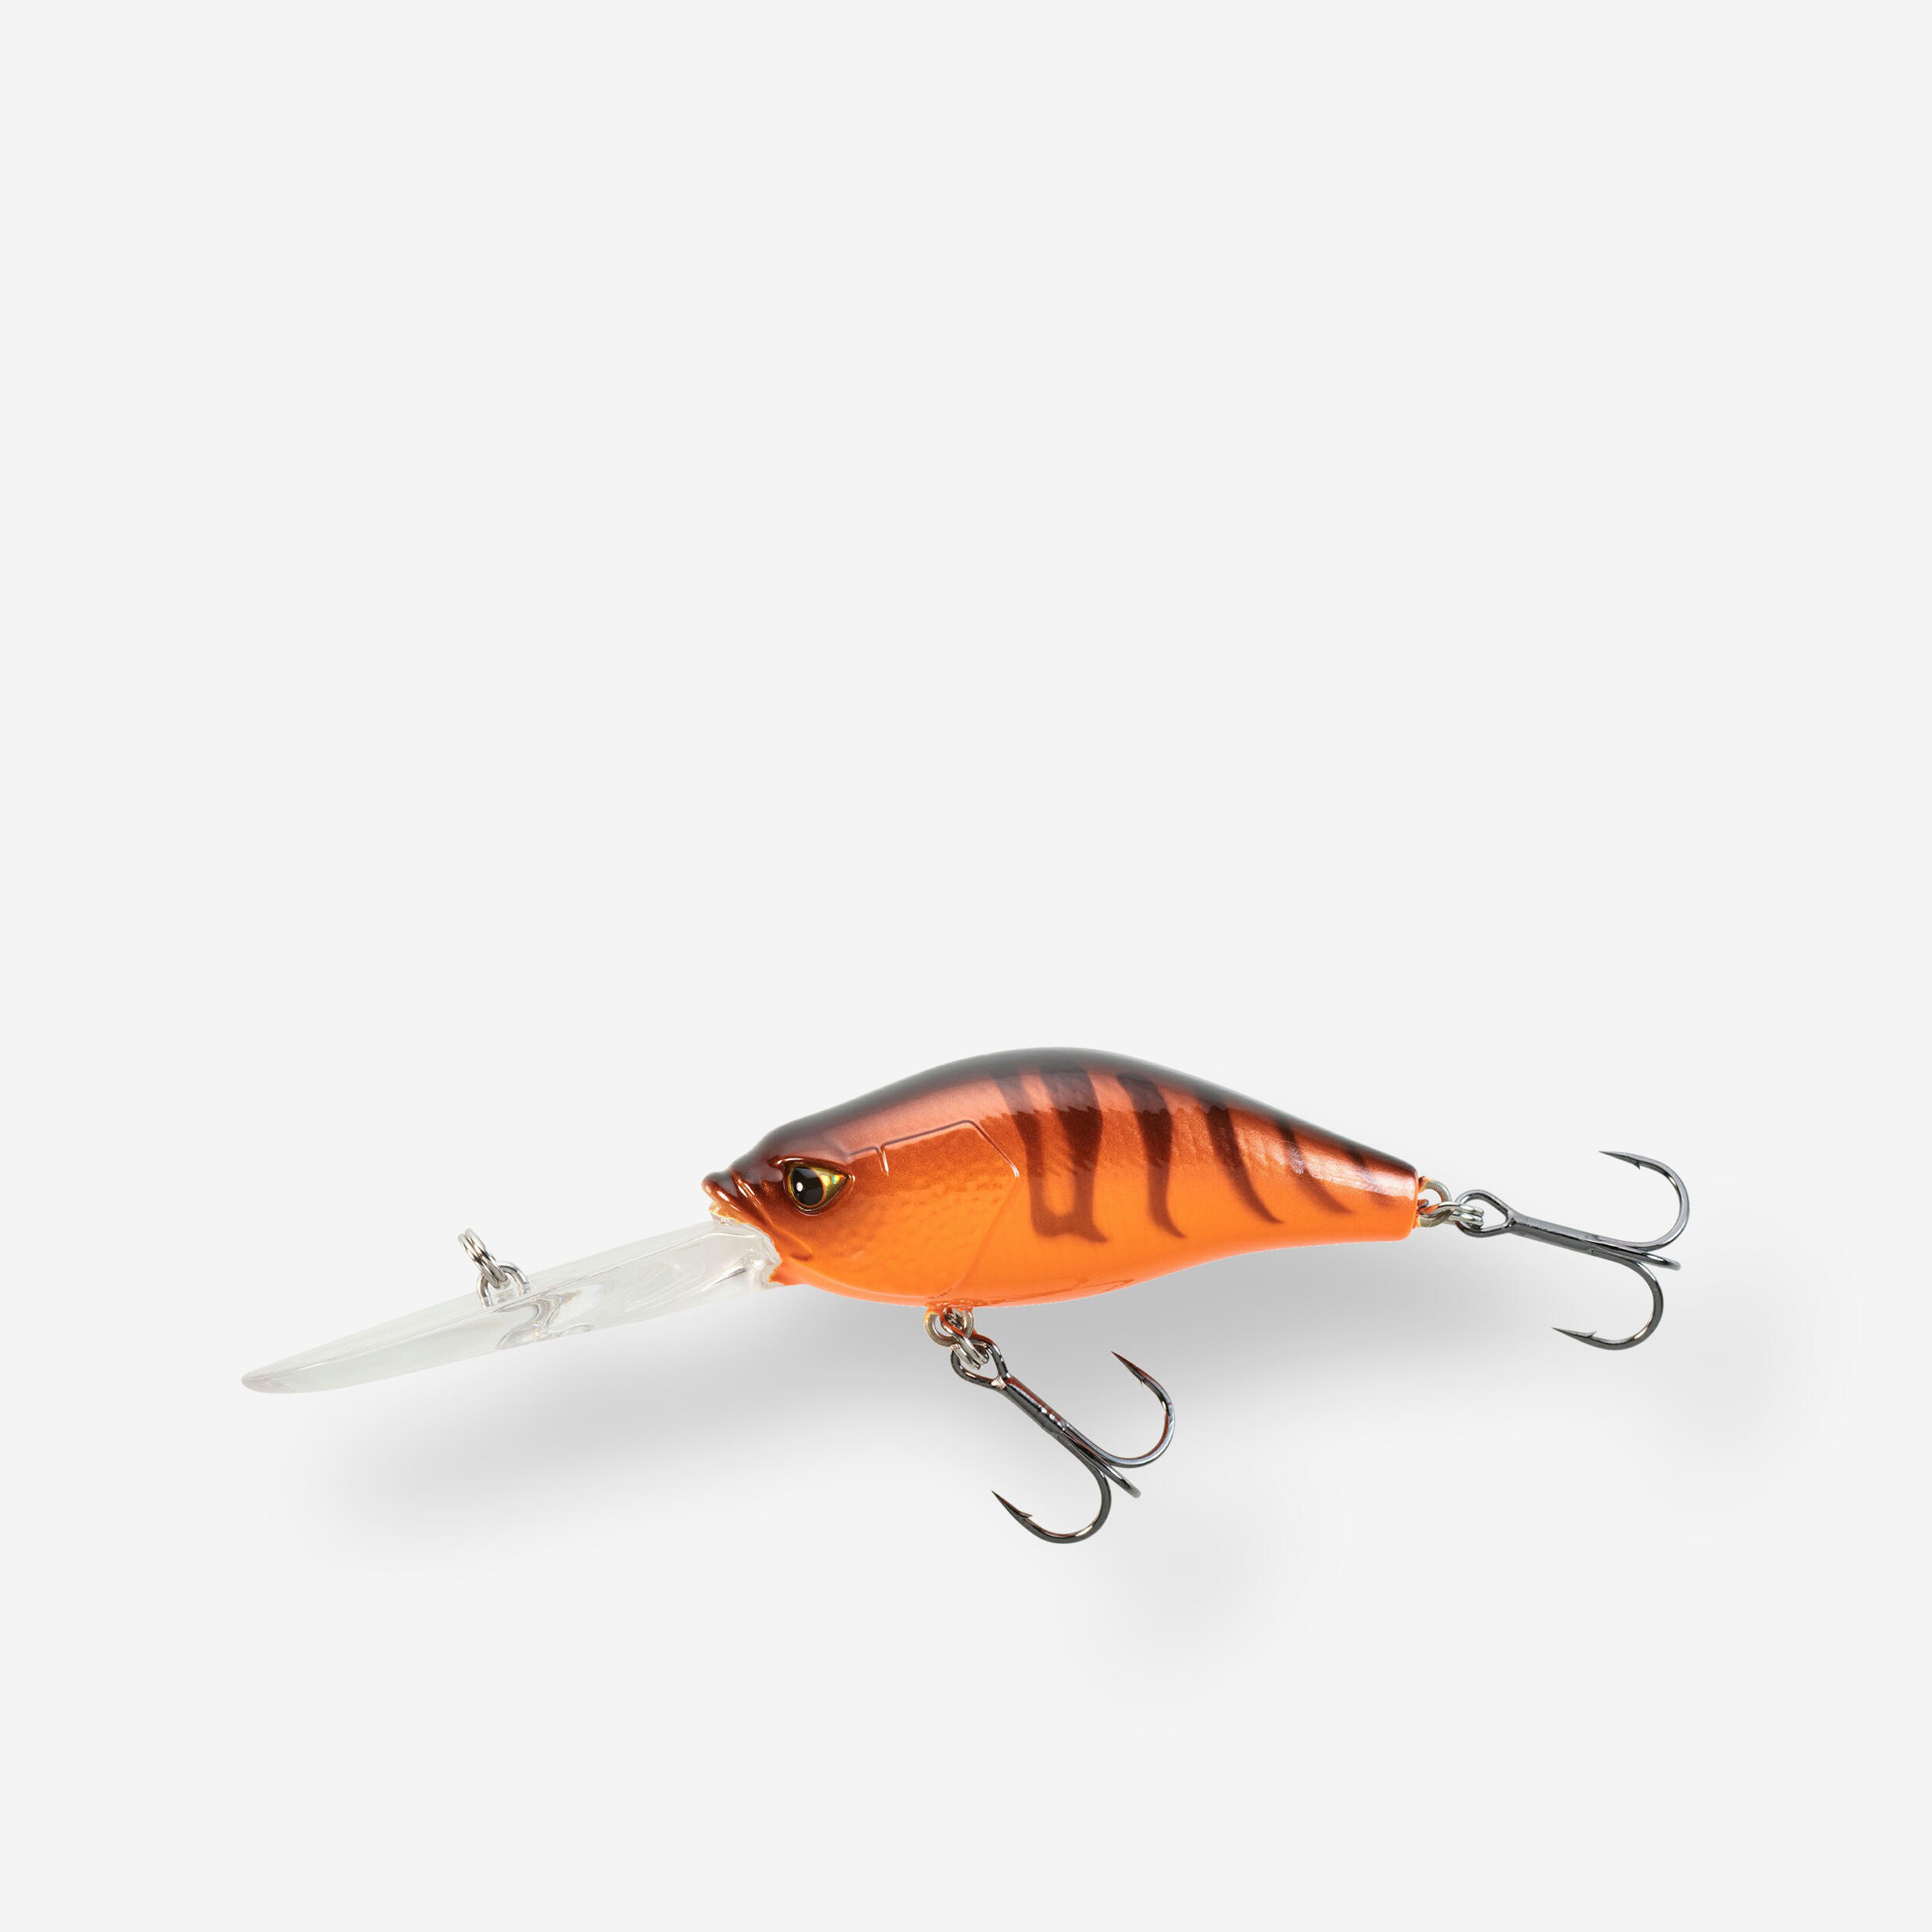 60 lure fishing crankbait - Fluo orange, Black - Caperlan - Decathlon